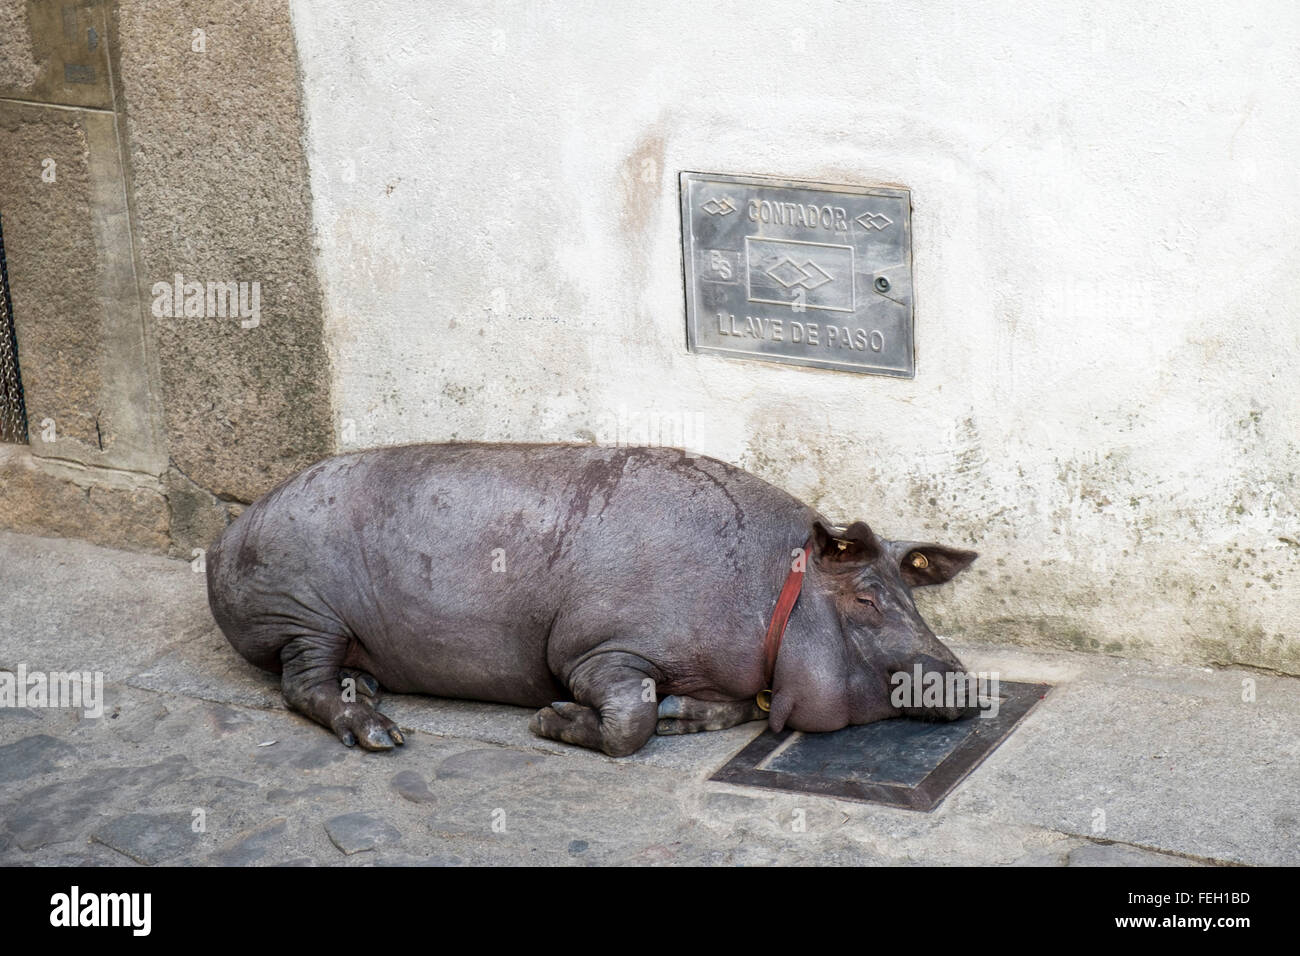 Juin 13 un porc sélectionné est libéré dans ses rues, traité avec soin puis abattu le 17 janvier. Mogarraz, province de Salamanque, Espagne Banque D'Images